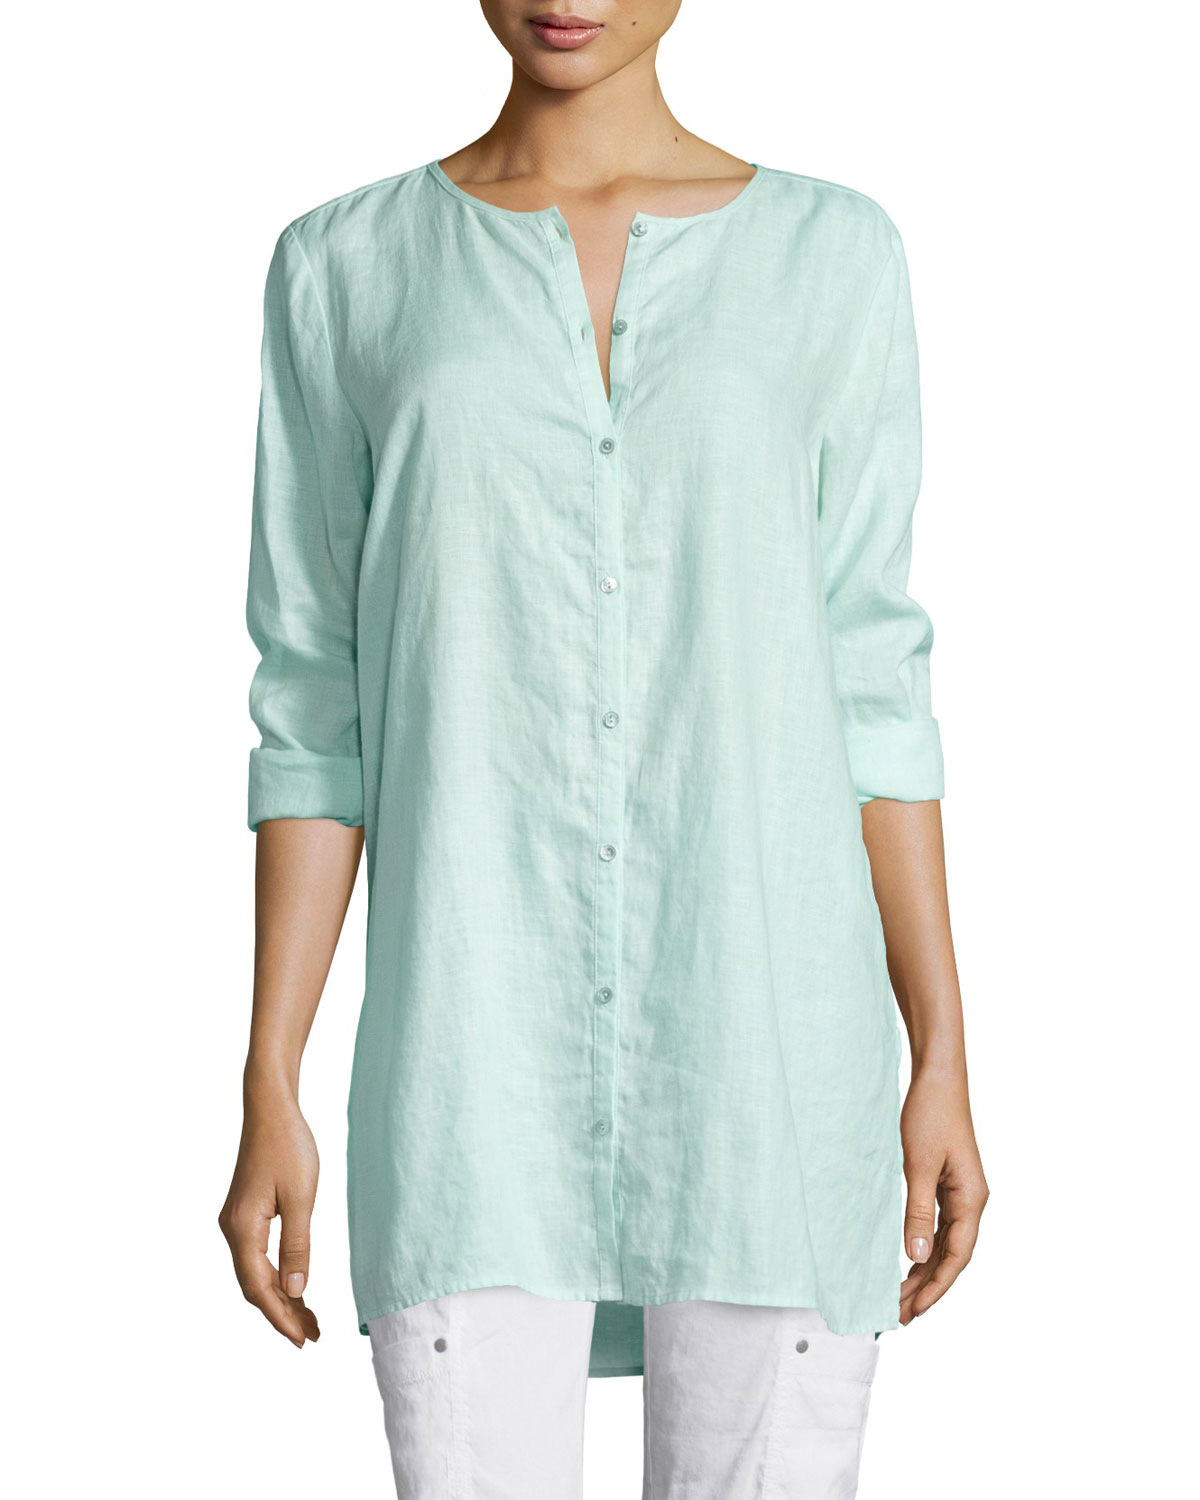 Lyst - Eileen fisher Organic Linen Long Shirt in Blue